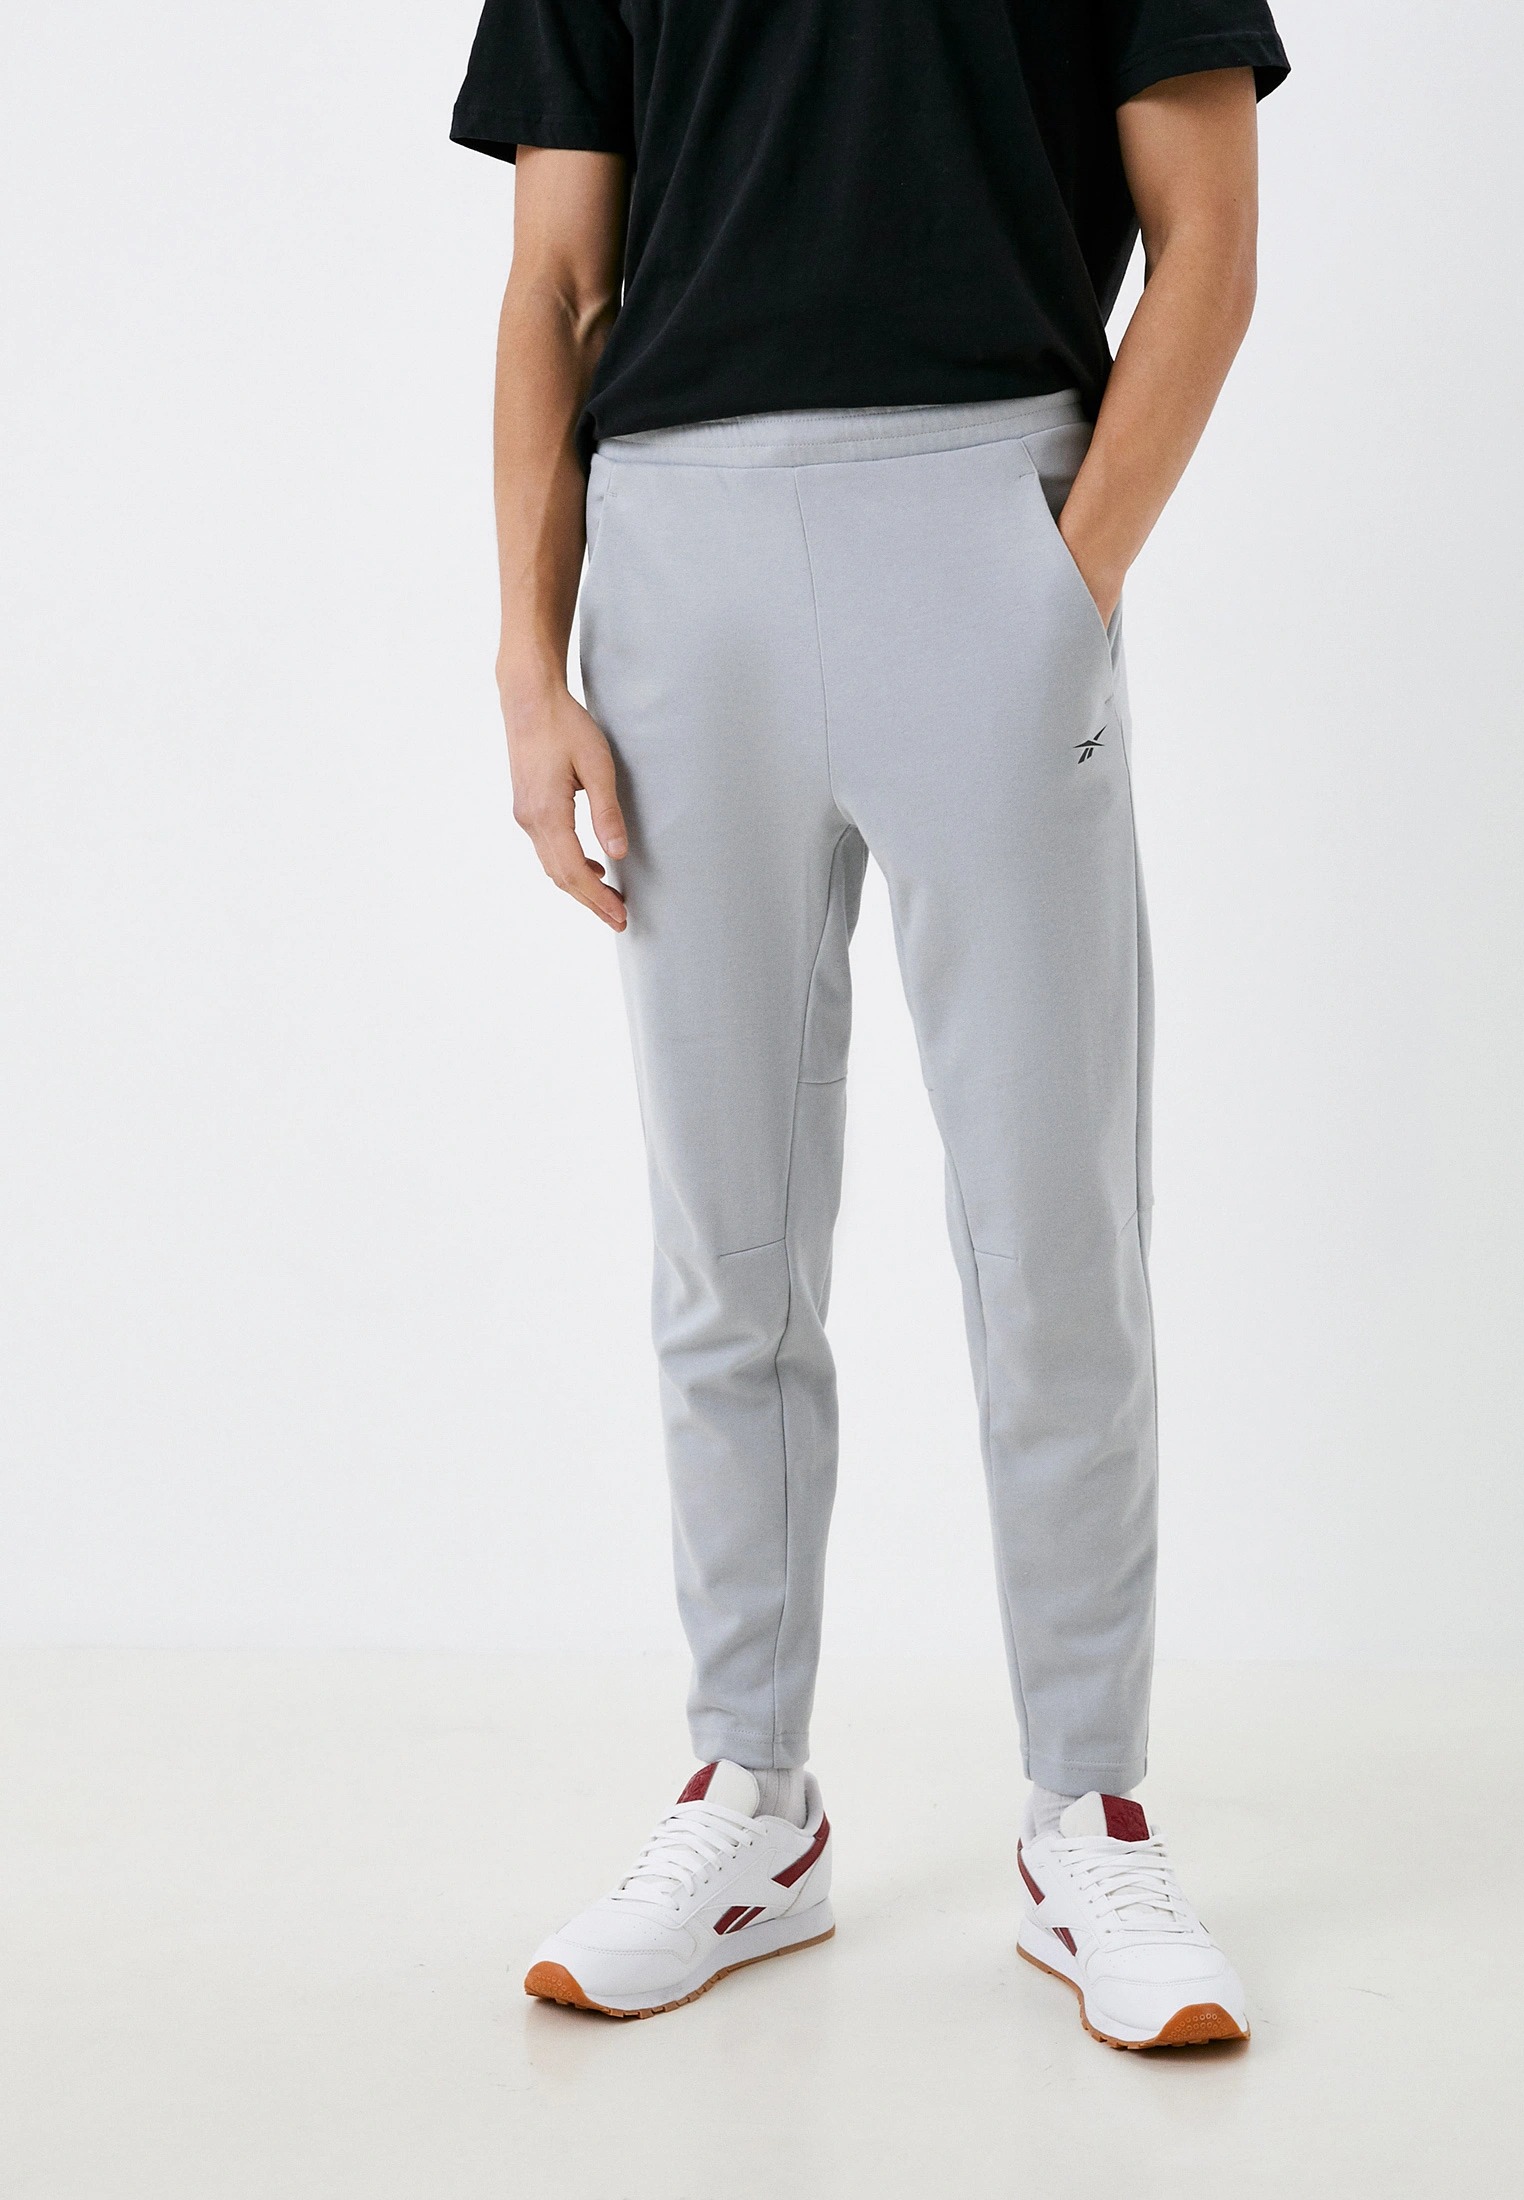 Спортивные брюки мужские Reebok HK7046 серые L